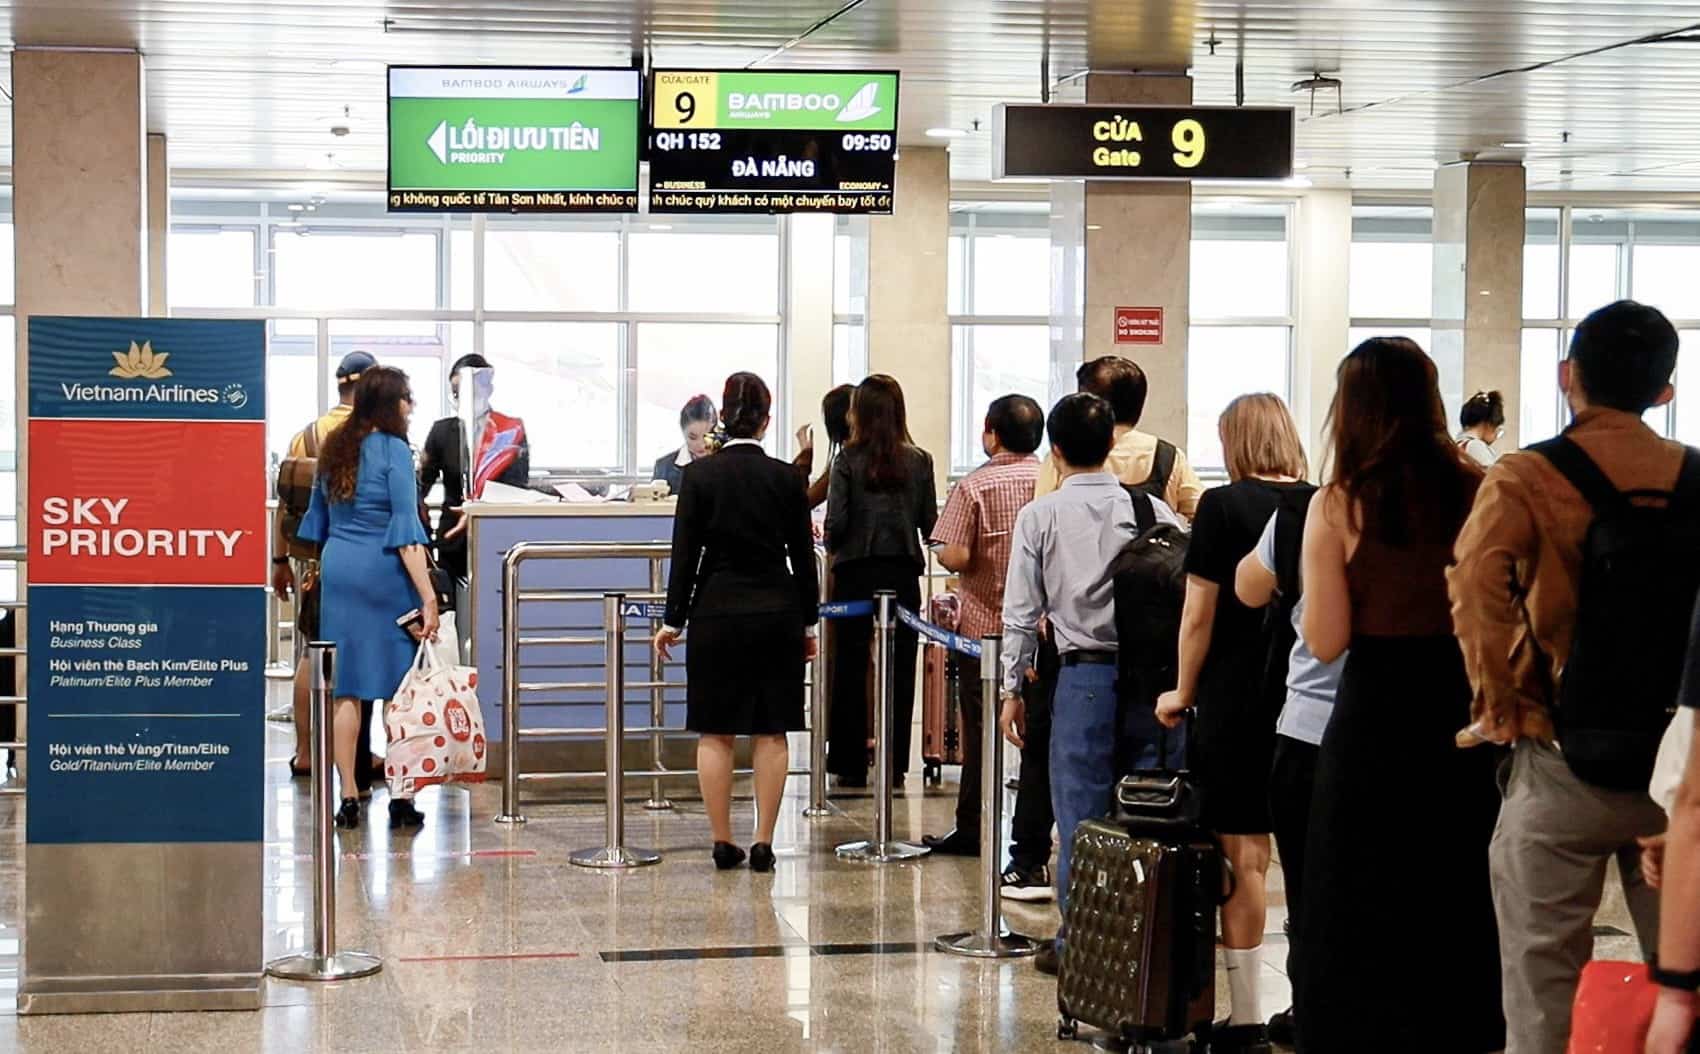 Theo Cảng Hàng không quốc tế Tân Sơn Nhất, ngày hôm nay 4.2 (tức 25 tháng Chạp), tổng số chuyến bay sự kiến là 893 chuyến, tương ứng hơn 128.000 hành khách. Trong đó, chiều đi có tổng cộng 84.750 hành khách, chiều đến chỉ có khoảng 43.257 hành khách.